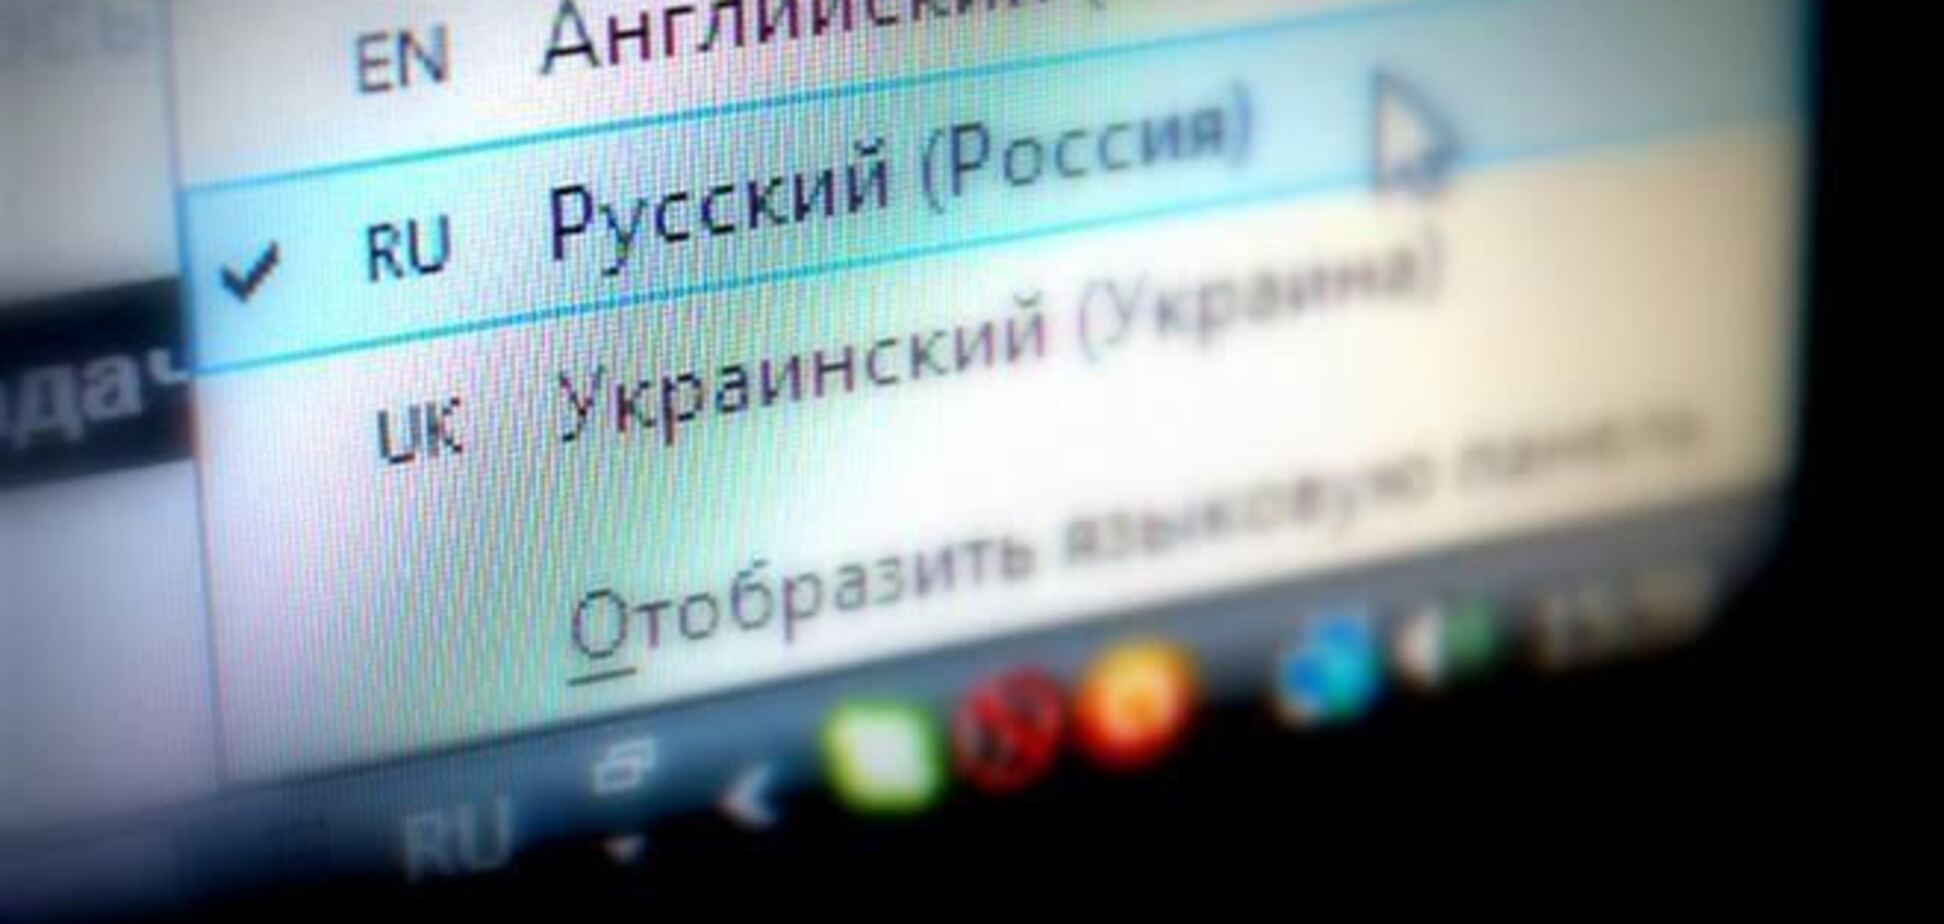  Русский стал официальным языком делопроизводства в Севастополе